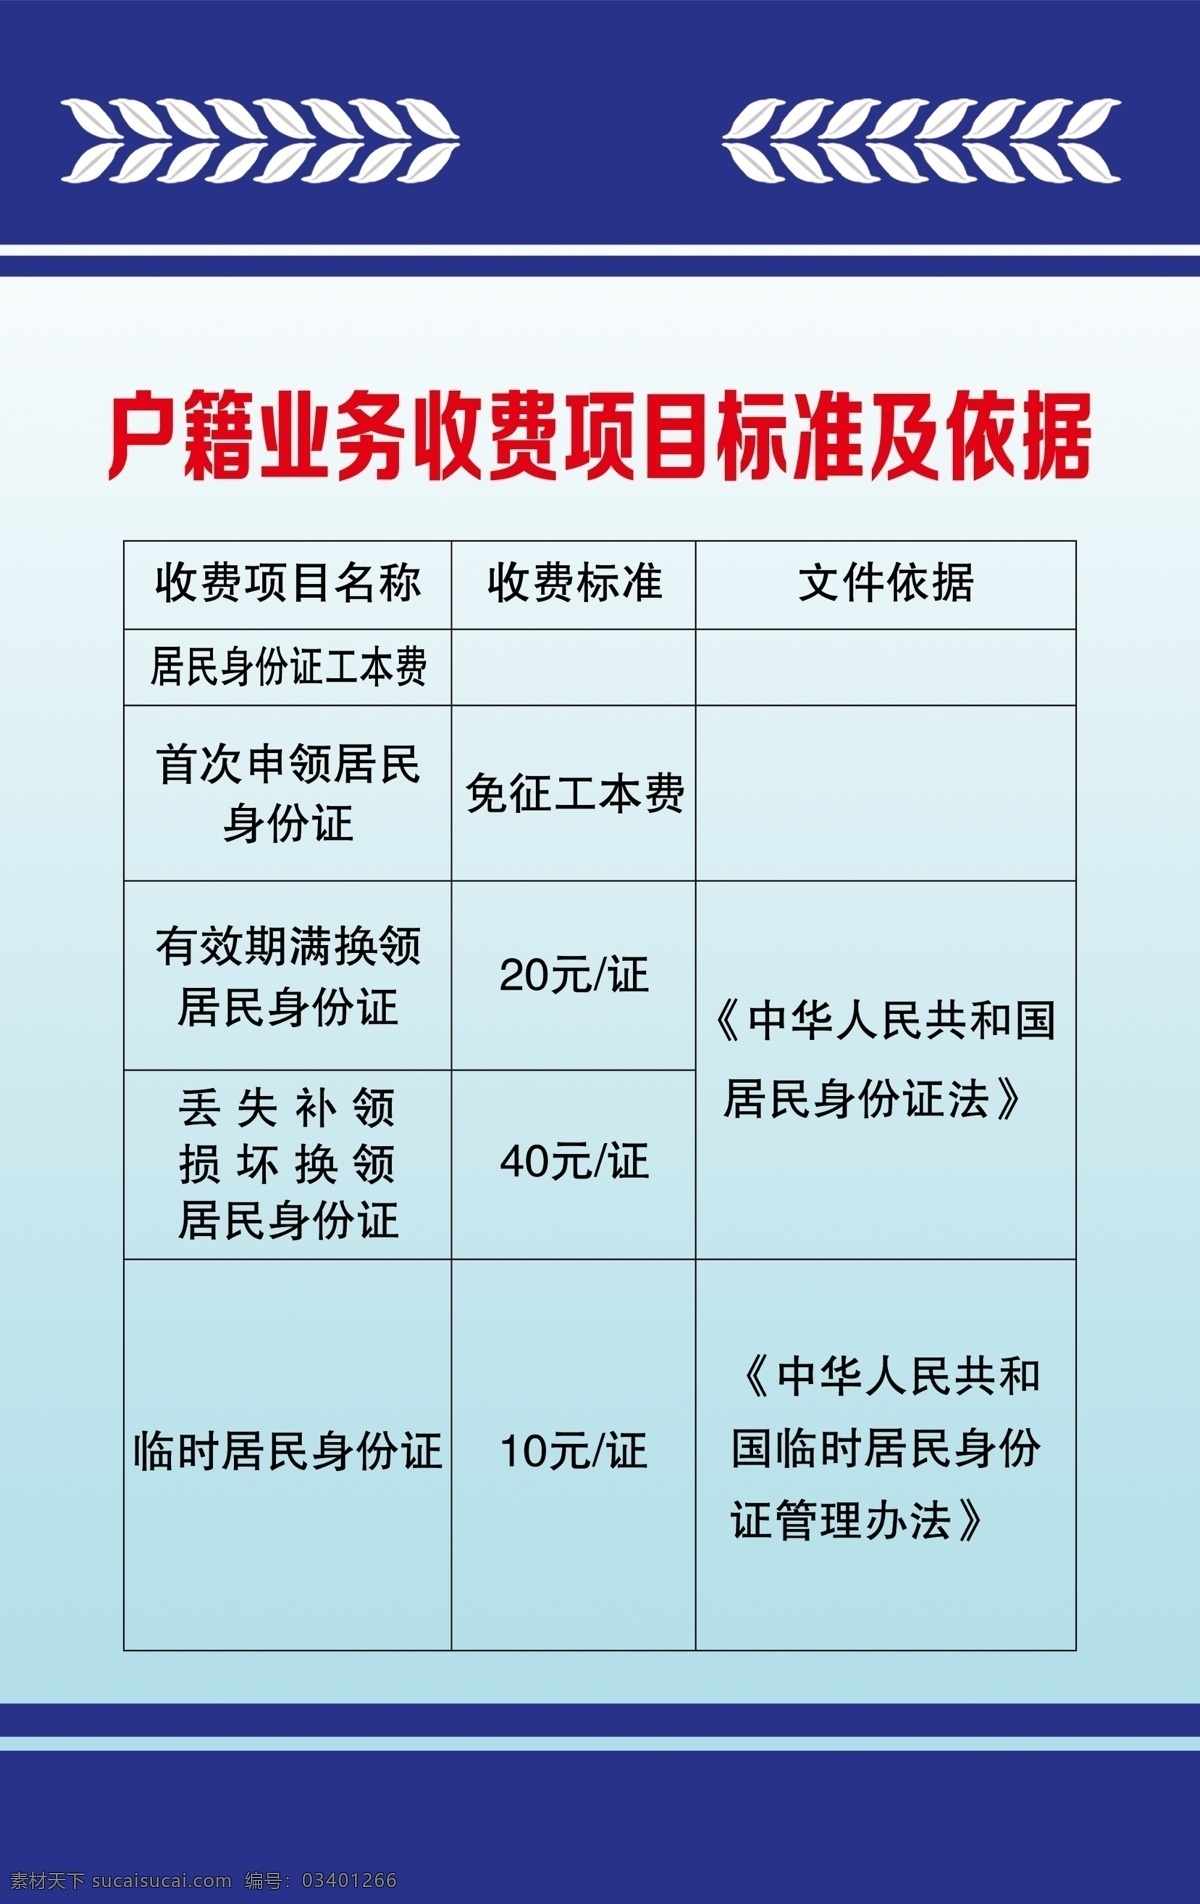 司法展板 户籍依据 中国司法 司法所展板 蓝色展板 工作职责 司法所 版面